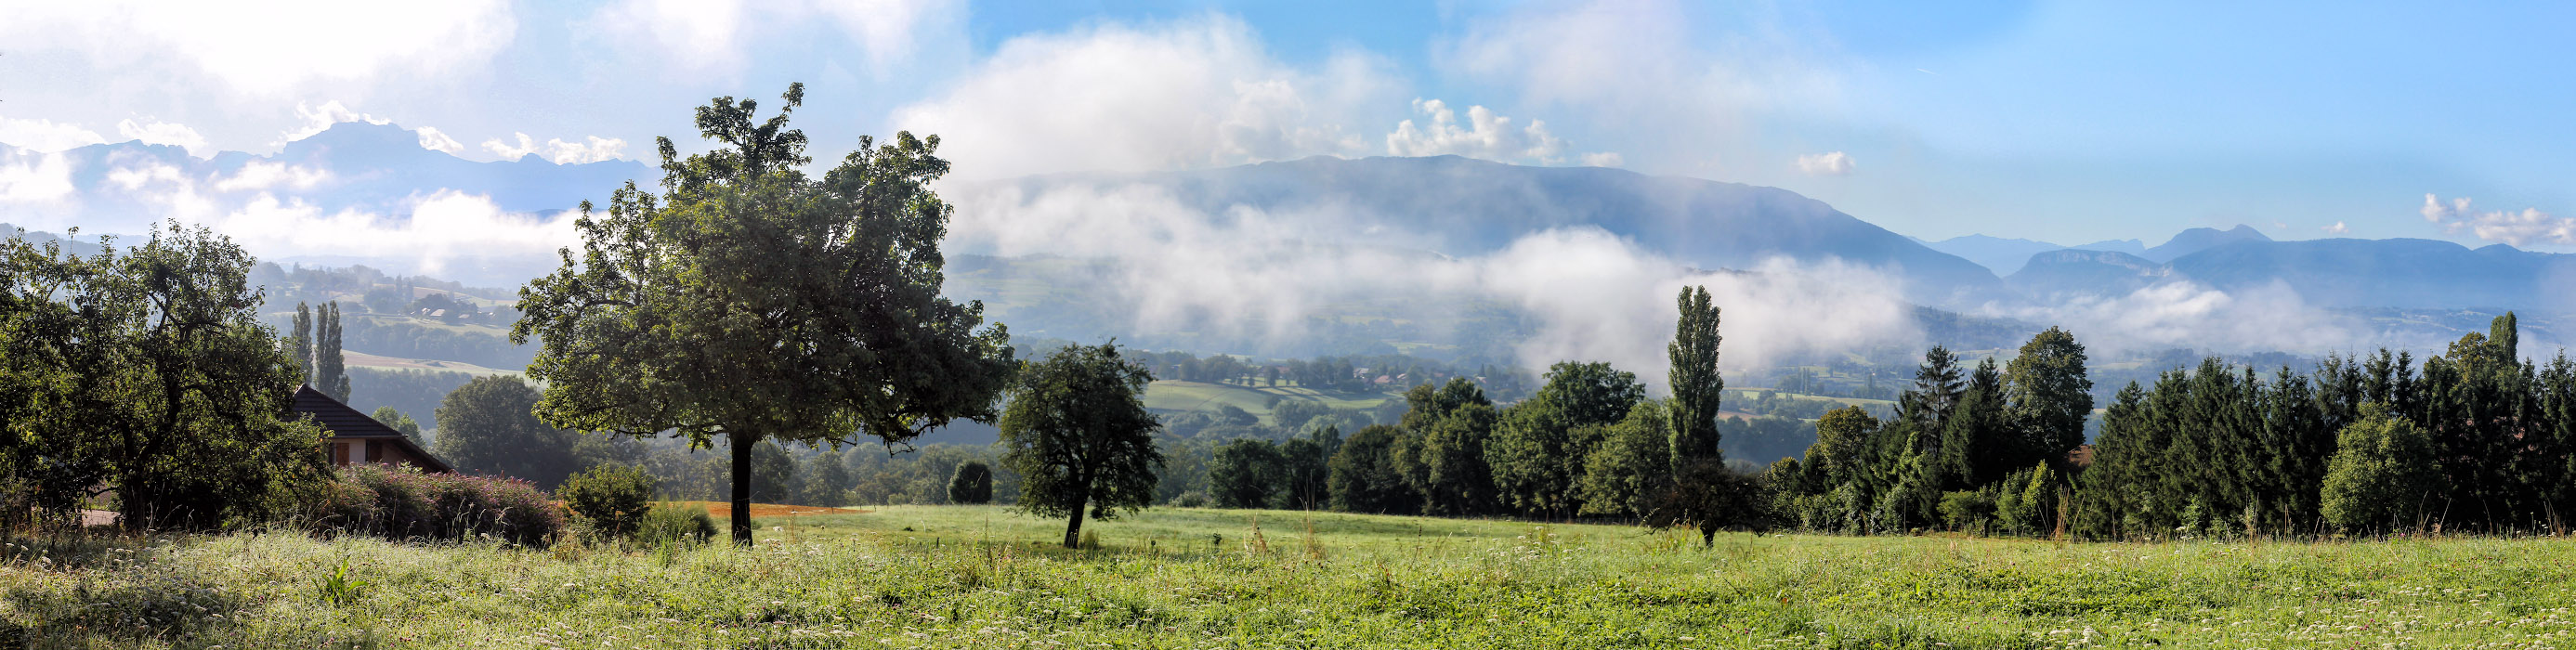 Фото-Тула. Виктор Дронов. Туманные облака в межгорных долинах